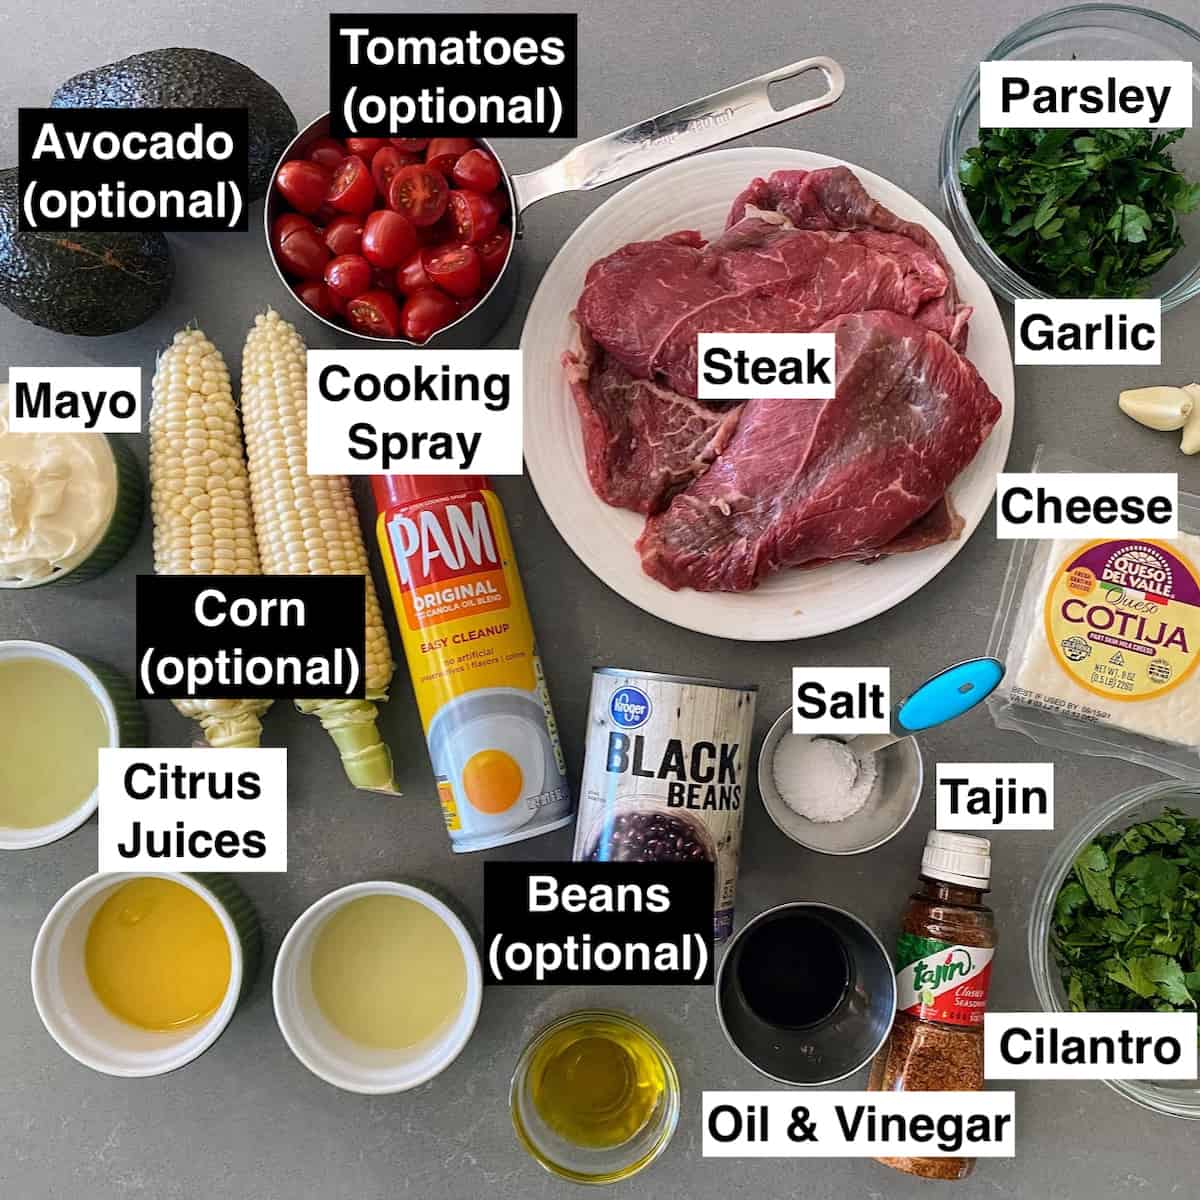 ingredients for chimichurri carne sada dish 